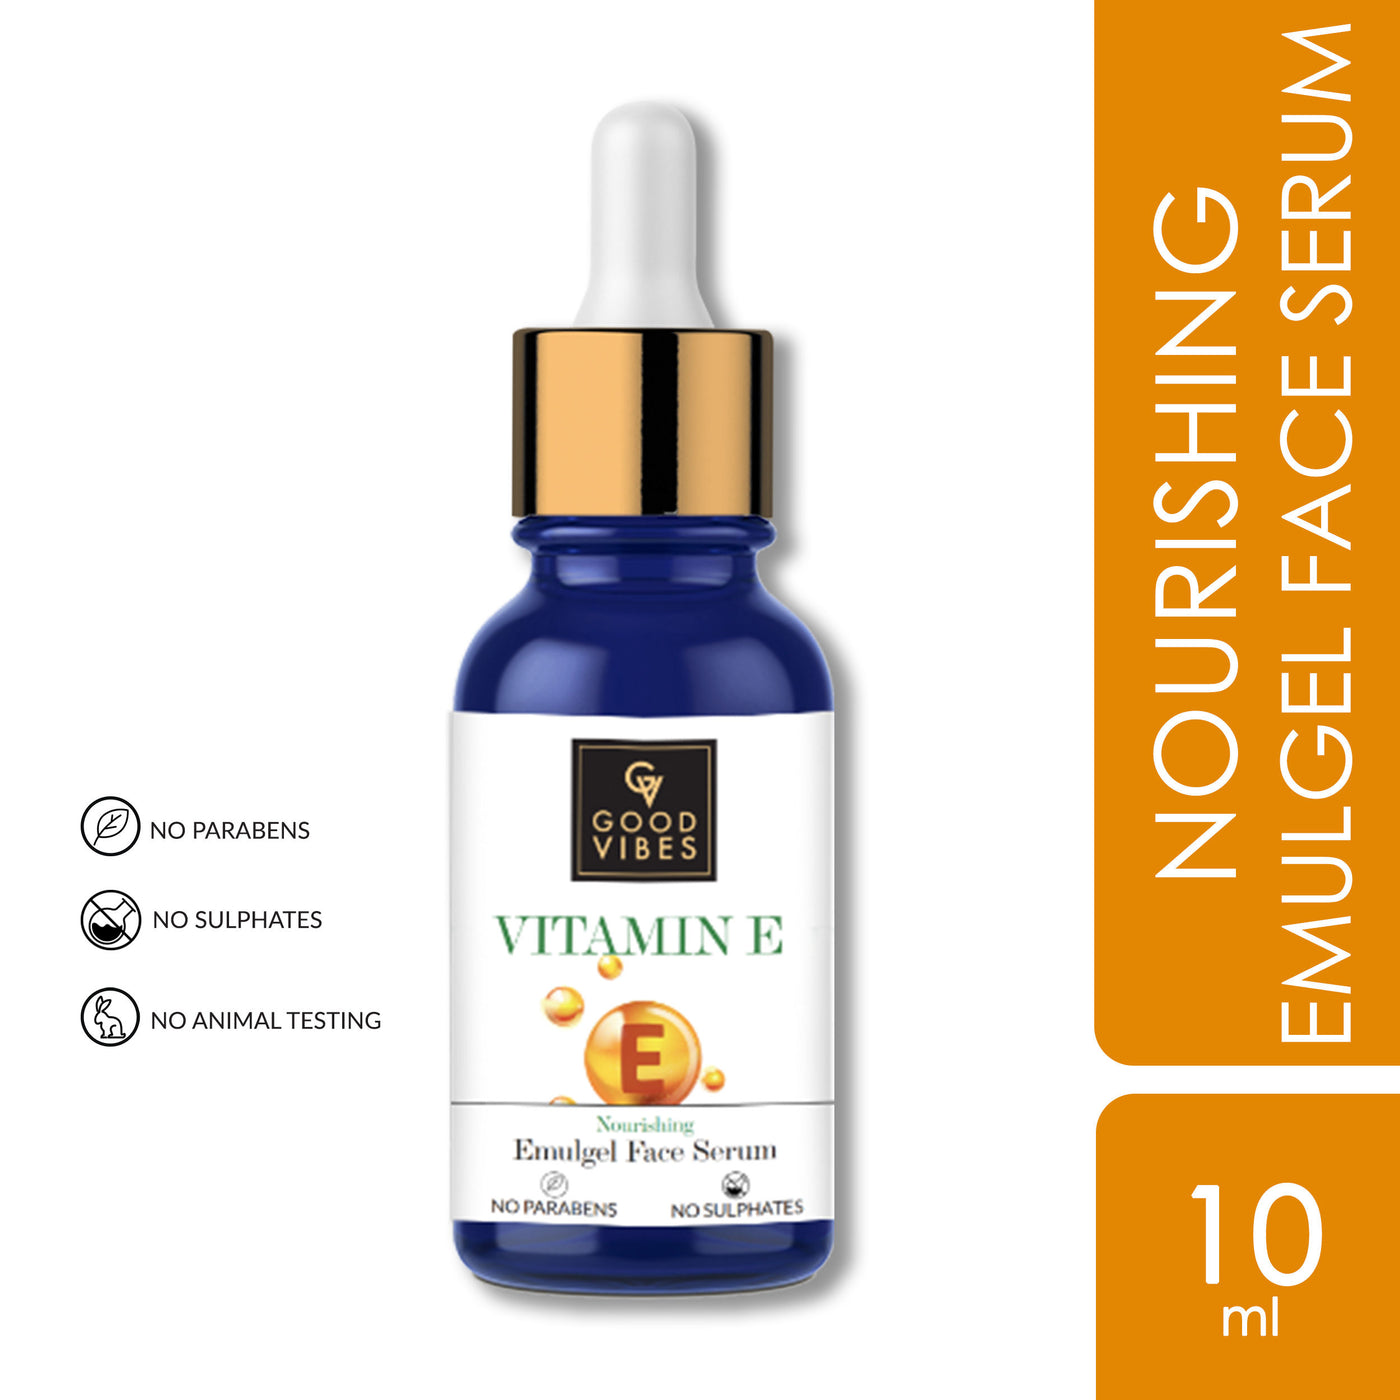 good-vibes-vitamin-e-nourishing-emulgel-face-serum-10-ml-20-2